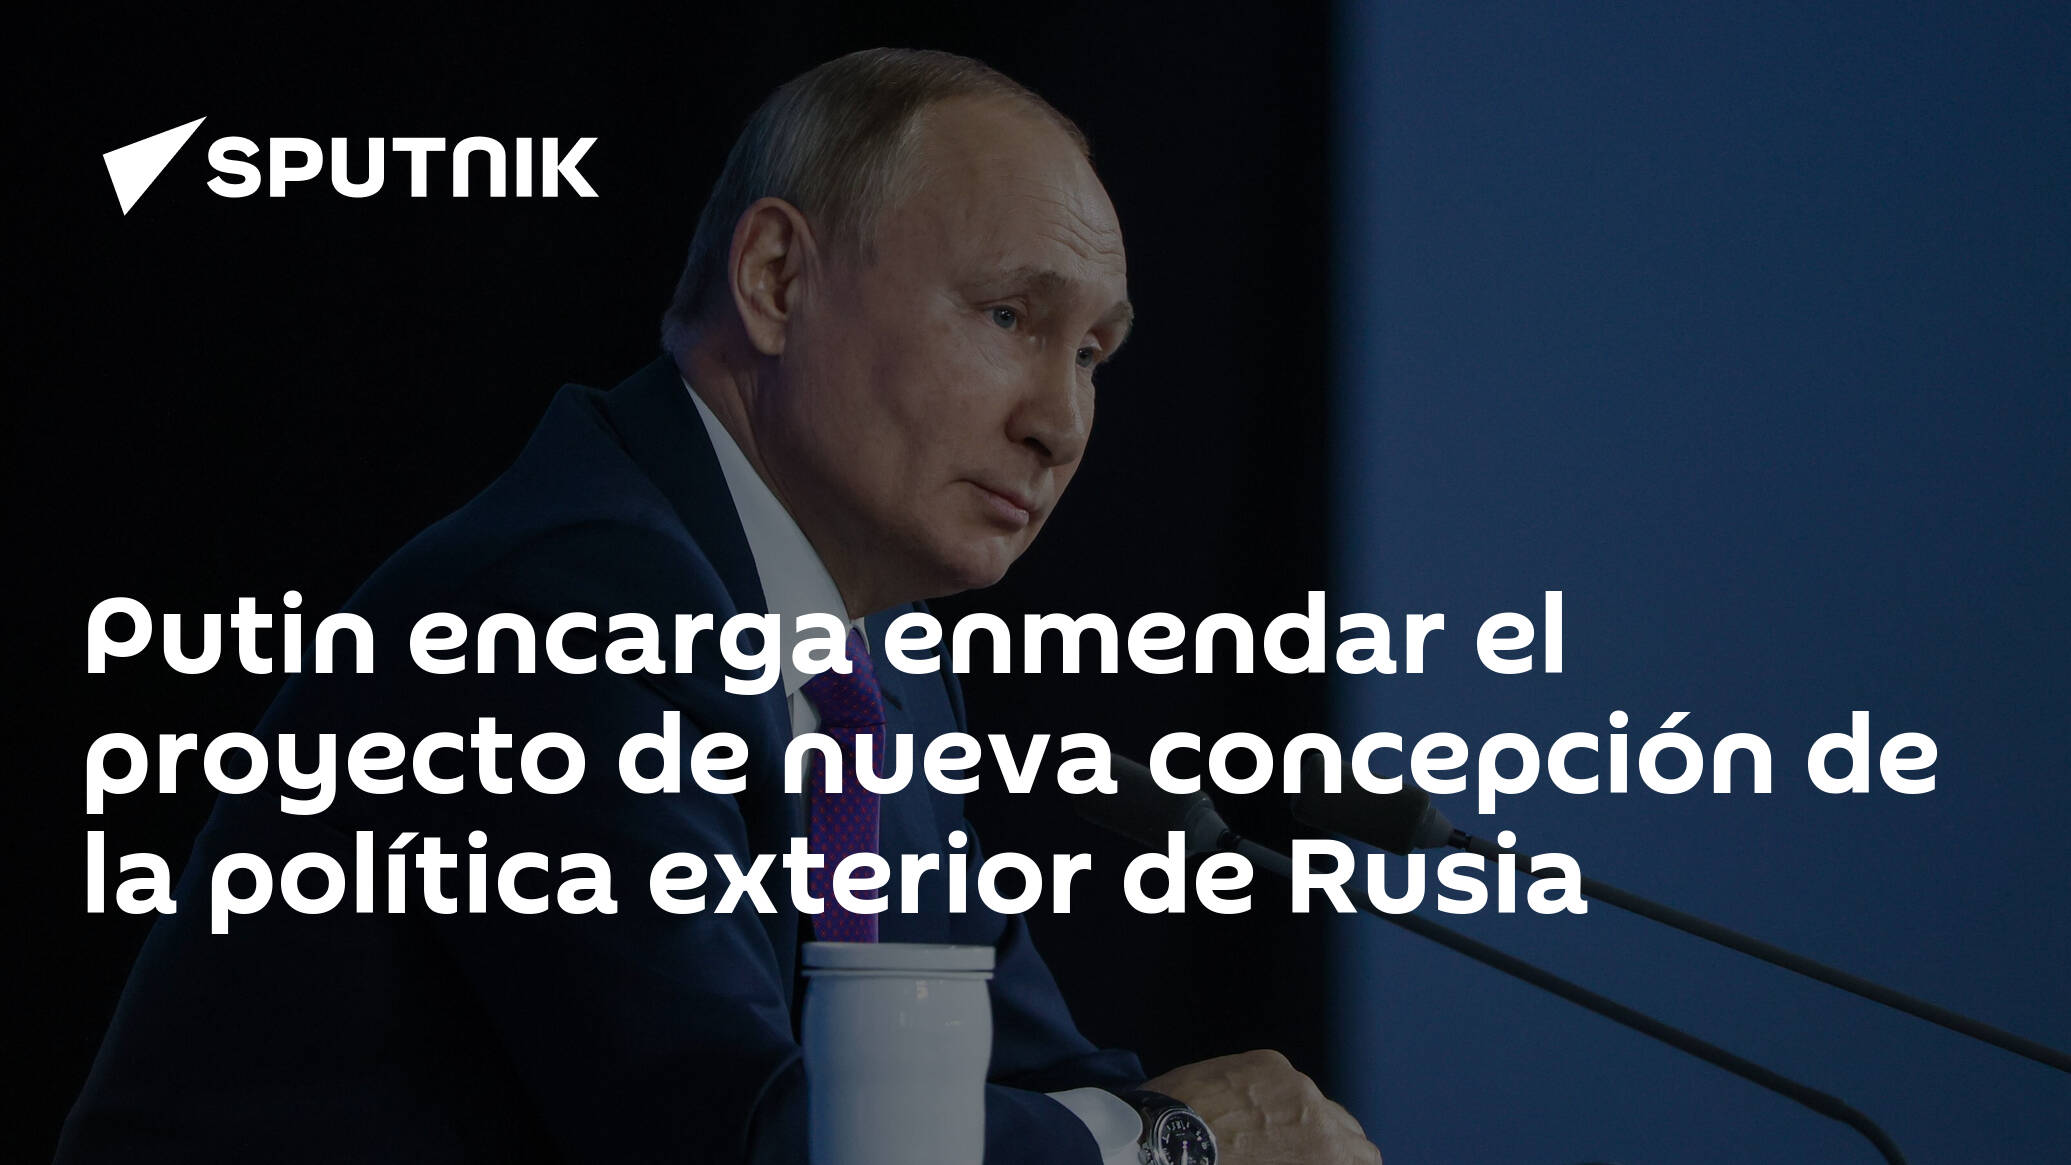 Putin Encarga Enmendar El Proyecto De Nueva Concepción De La Política Exterior De Rusia 2801 8673